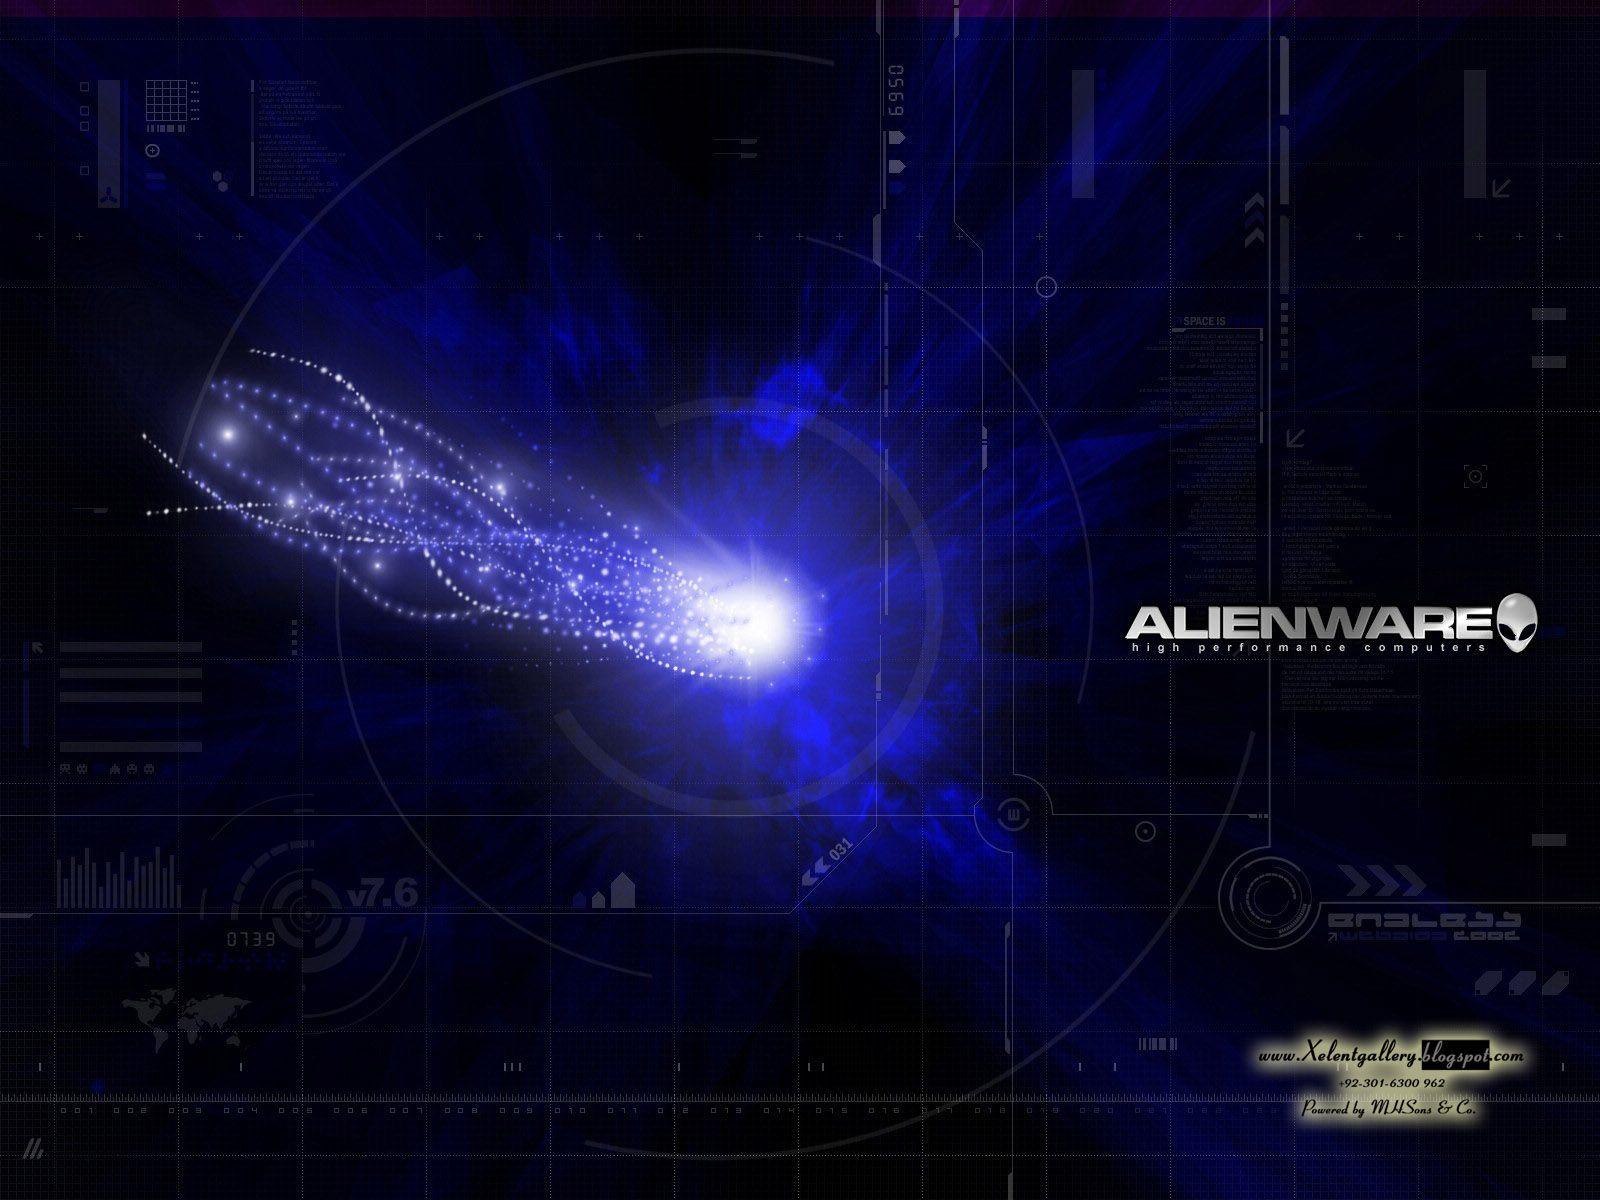 HD Alienware Wallpaper Pack (1600x1200) Xelent Gallery